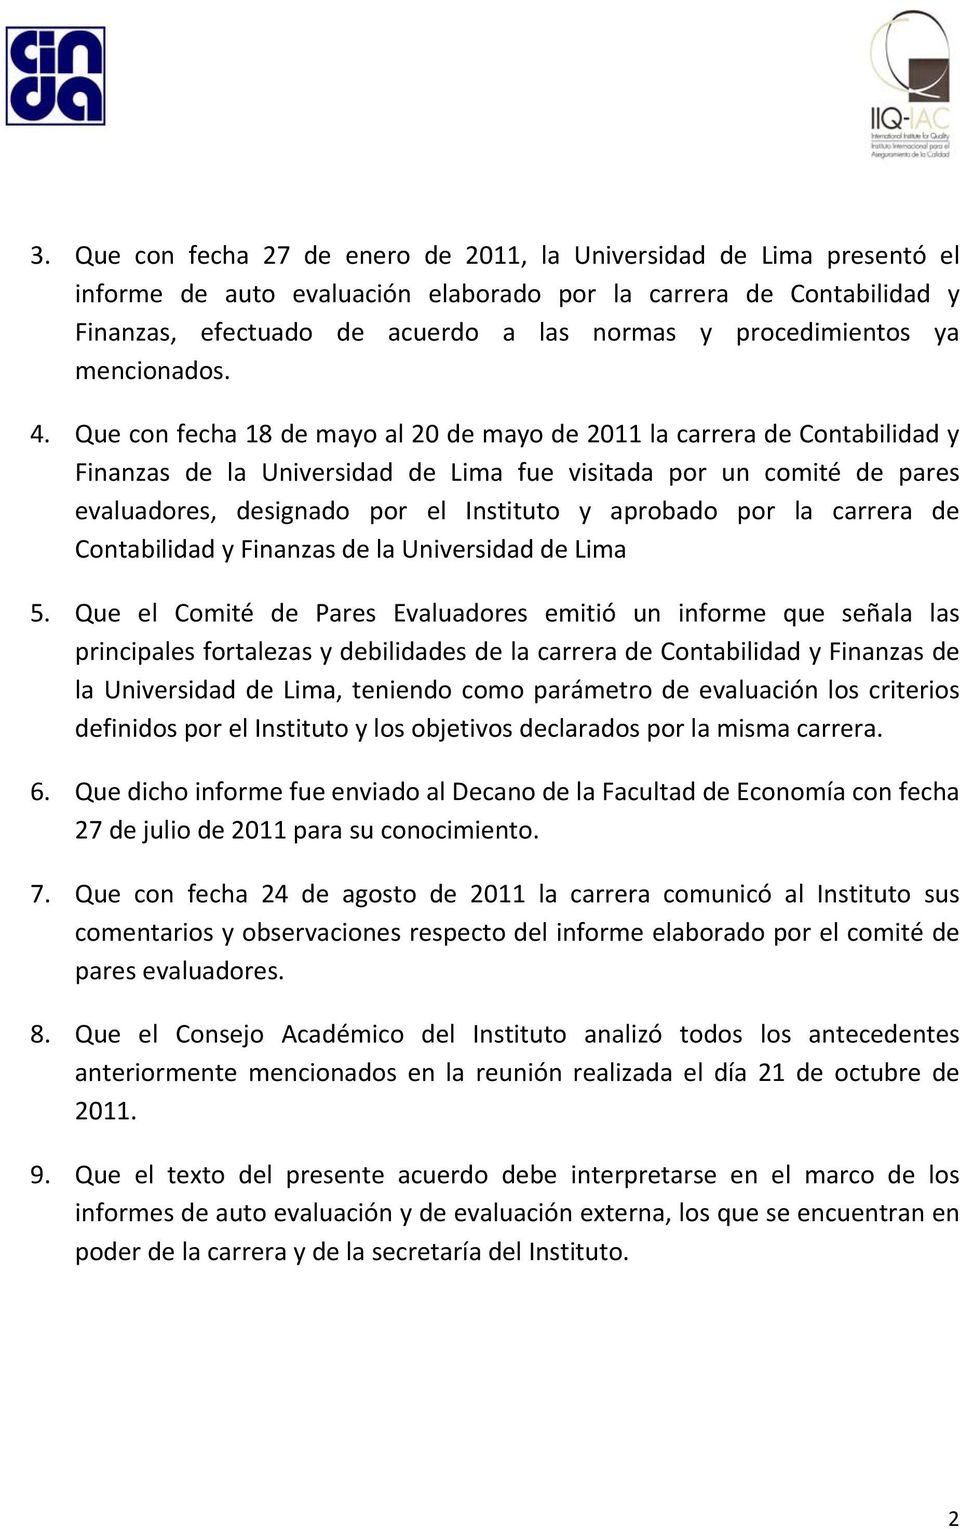 Que con fecha 18 de mayo al 20 de mayo de 2011 la carrera de Contabilidad y Finanzas de la Universidad de Lima fue visitada por un comité de pares evaluadores, designado por el Instituto y aprobado